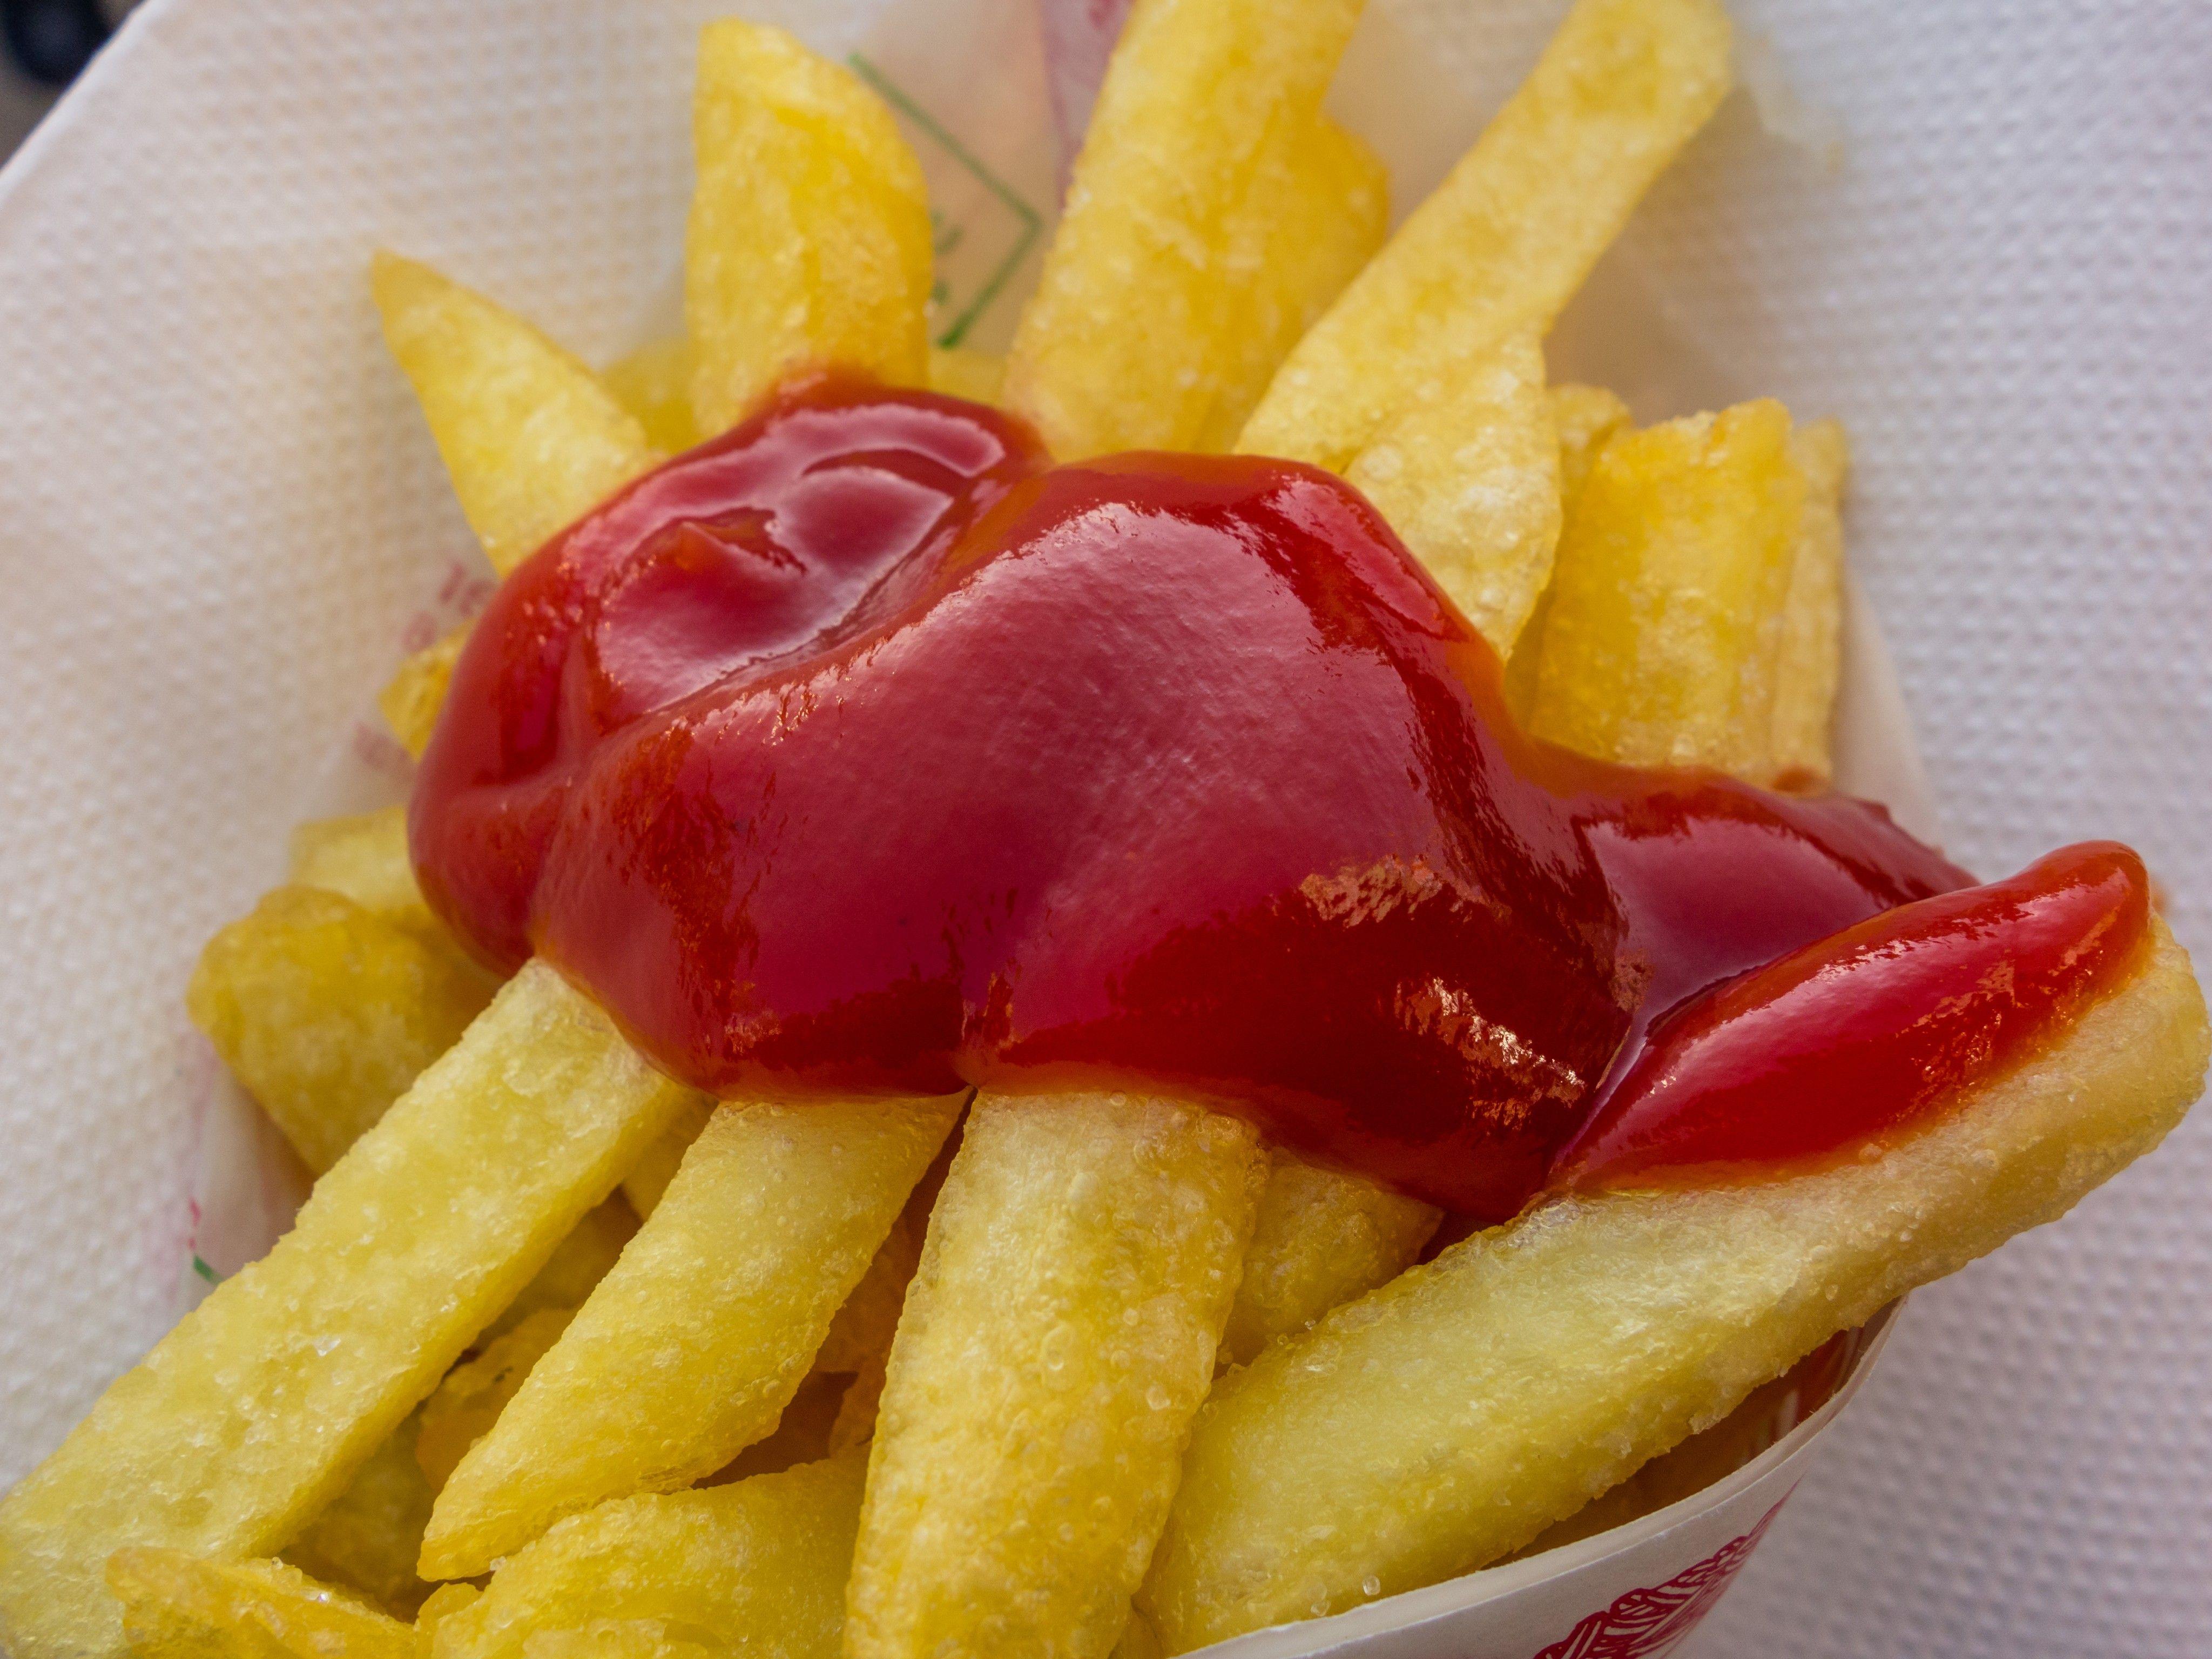 Neue EU-Regeln sollen ab 2019 das möglicherweise krebserregende Acrylamid in Lebensmitteln wie Pommes frites, Chips oder Knäckebrot so weit wie möglich zurückdrängen